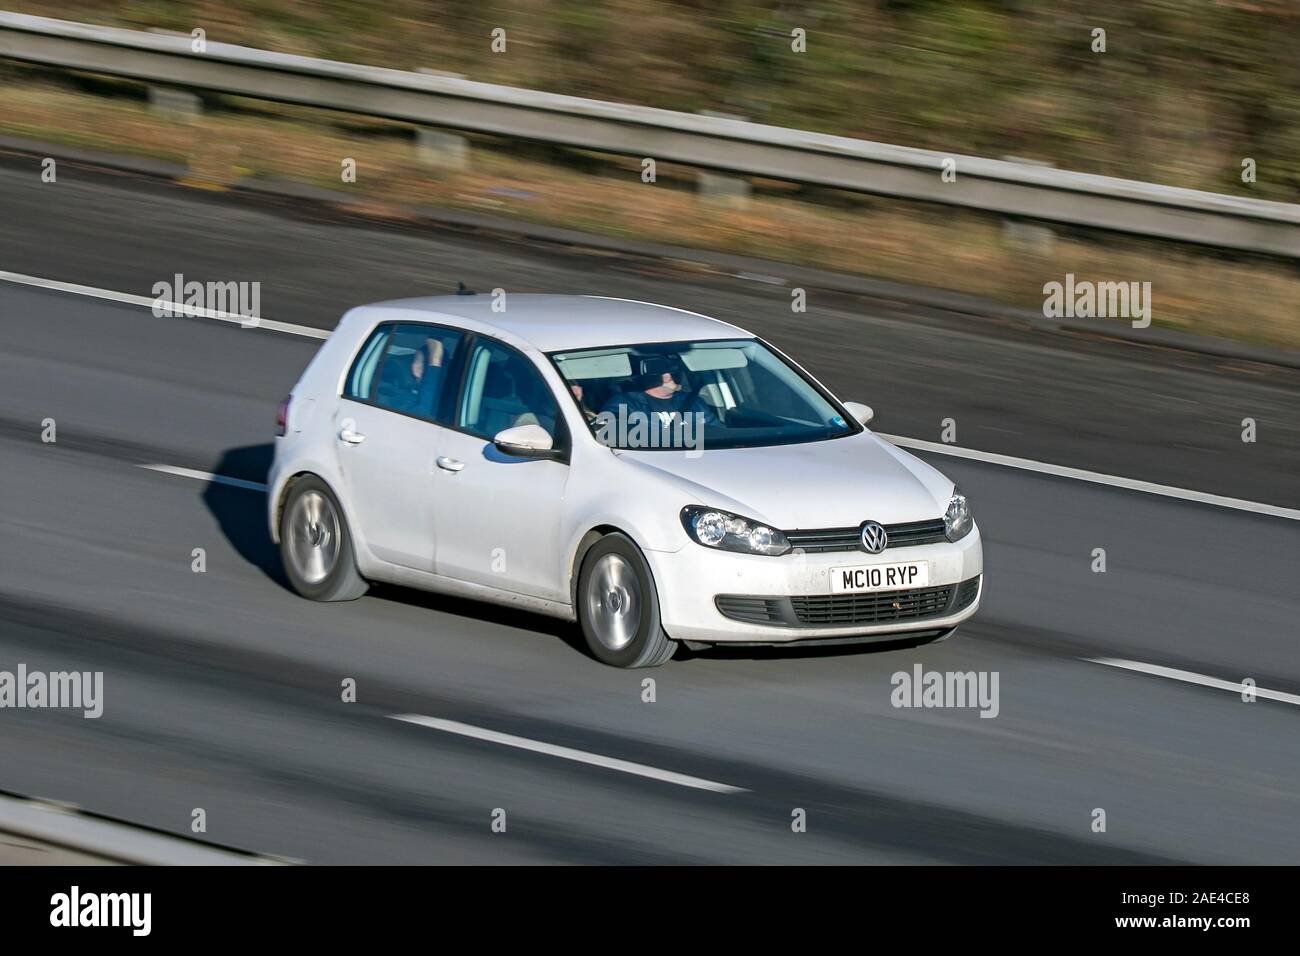 Verschwommen fahrendes Auto Volkswagen Golf TDI Bluemotion Se bei der Geschwindigkeit auf der M61 Autobahn reisen; Kamera Verschlusszeit übertreiben, das Fahrzeug bewegt sich langsam Stockfoto